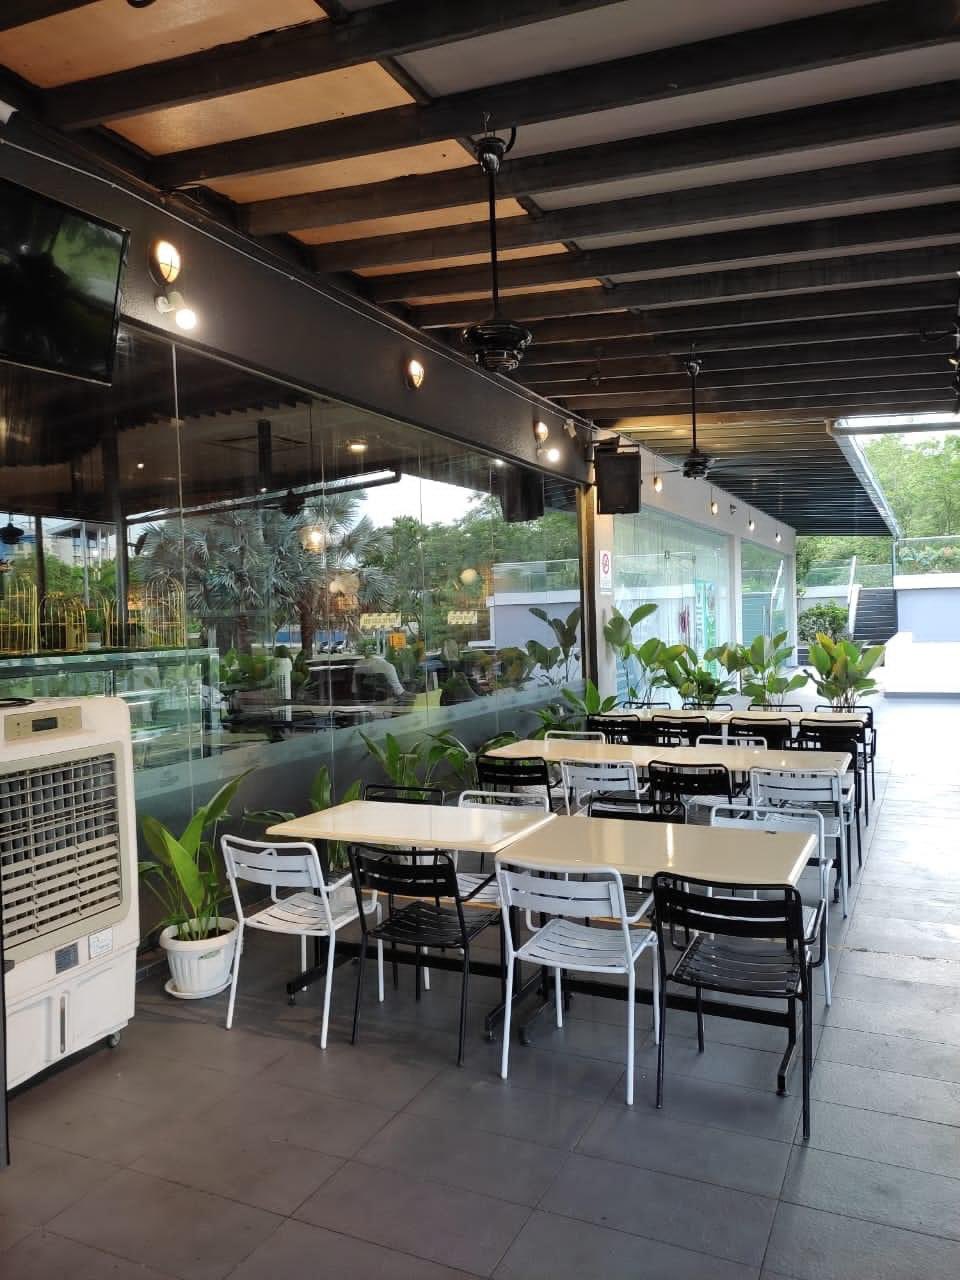 Kafe Cantik Sesuai Untuk Family Berkumpul Di Cyberjaya, Makanan Pun Sedap